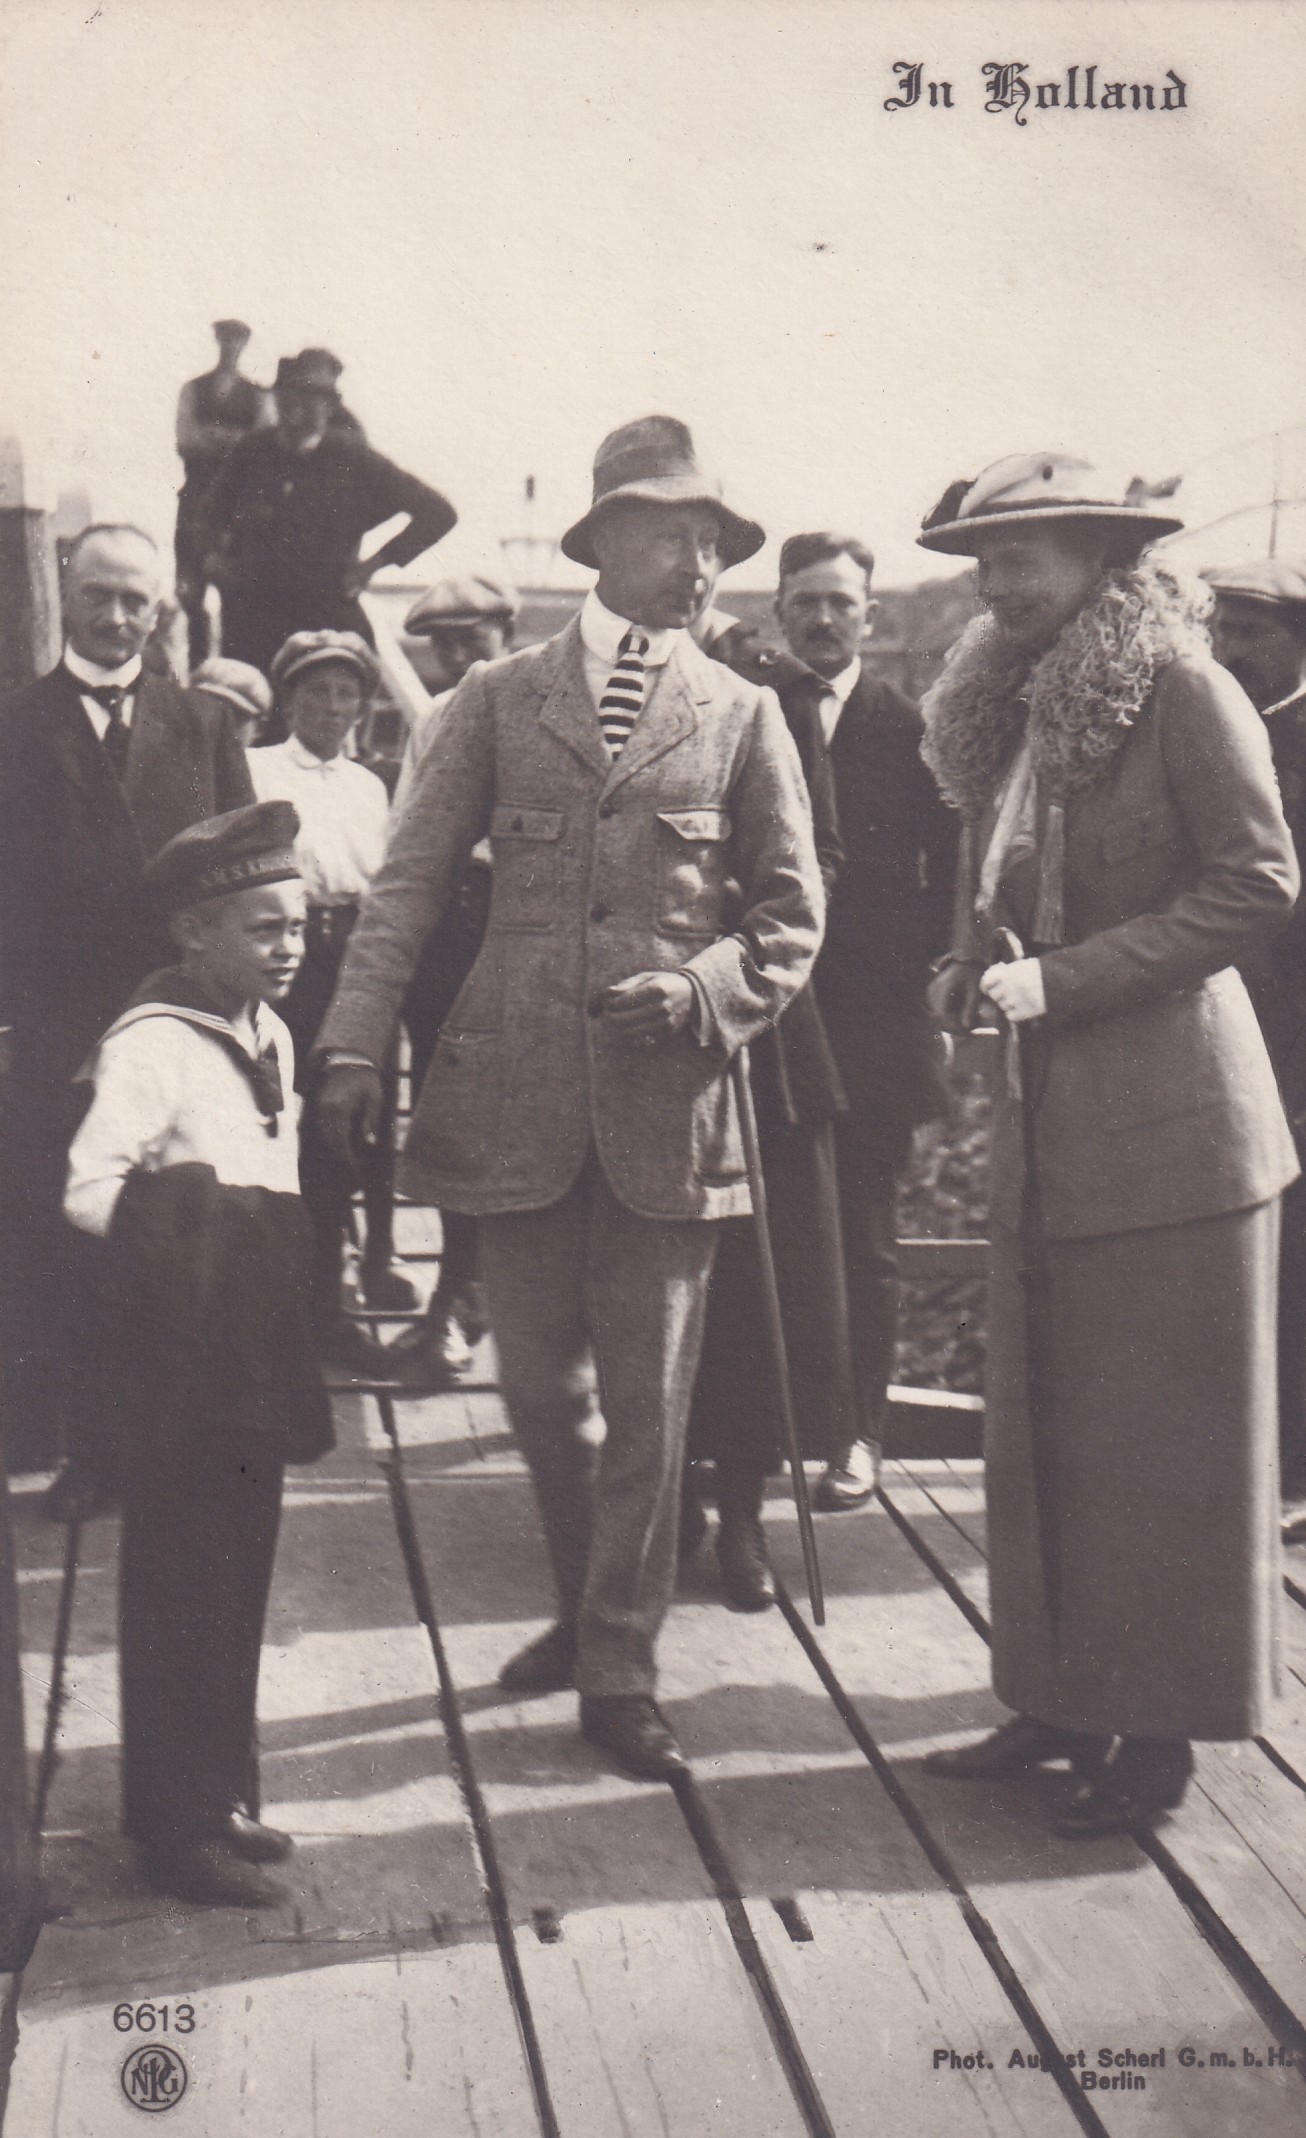 Bildpostkarte mit einem Foto des ehemaligen Kronprinzenpaares Wilhelm und Cecilie mit seinem Sohn Friedrich in Holland, 1920 (Schloß Wernigerode GmbH RR-F)